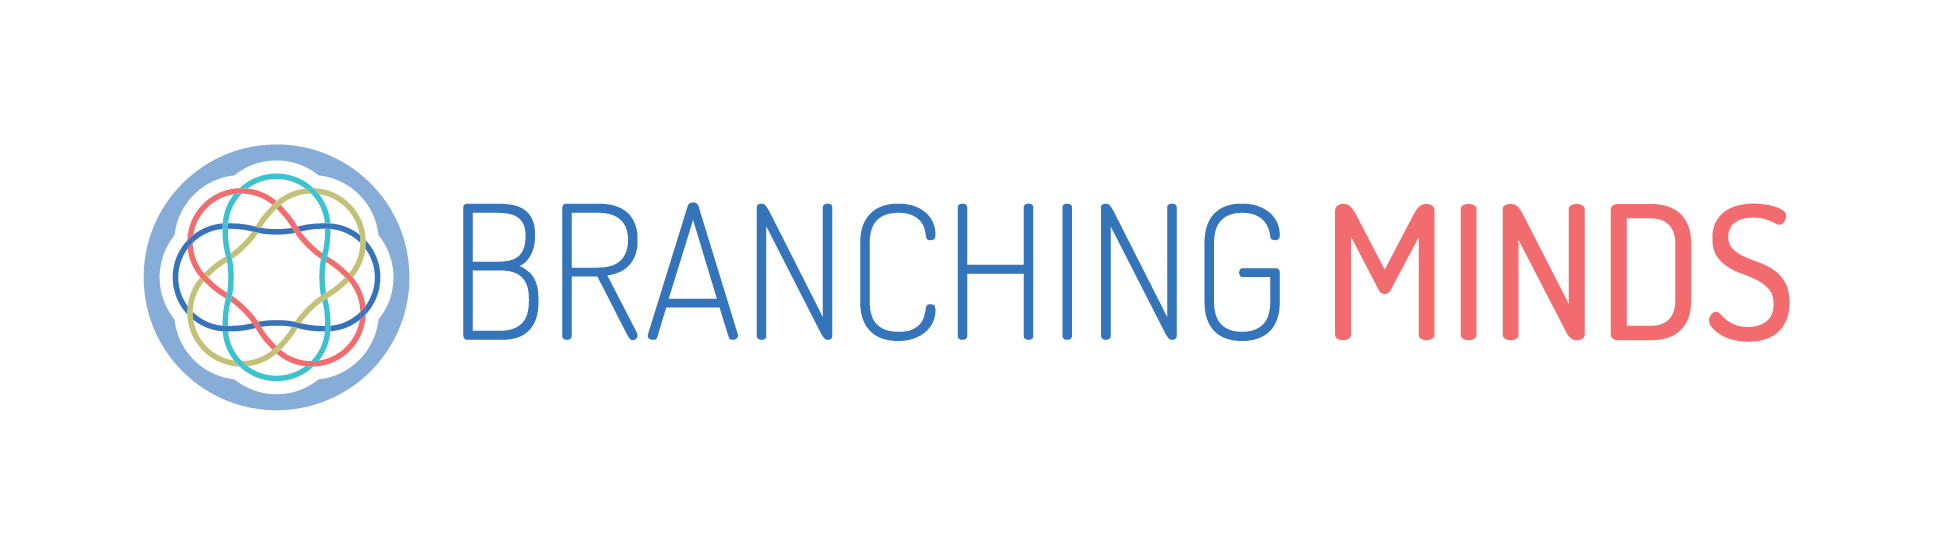 Branching Minds Logo